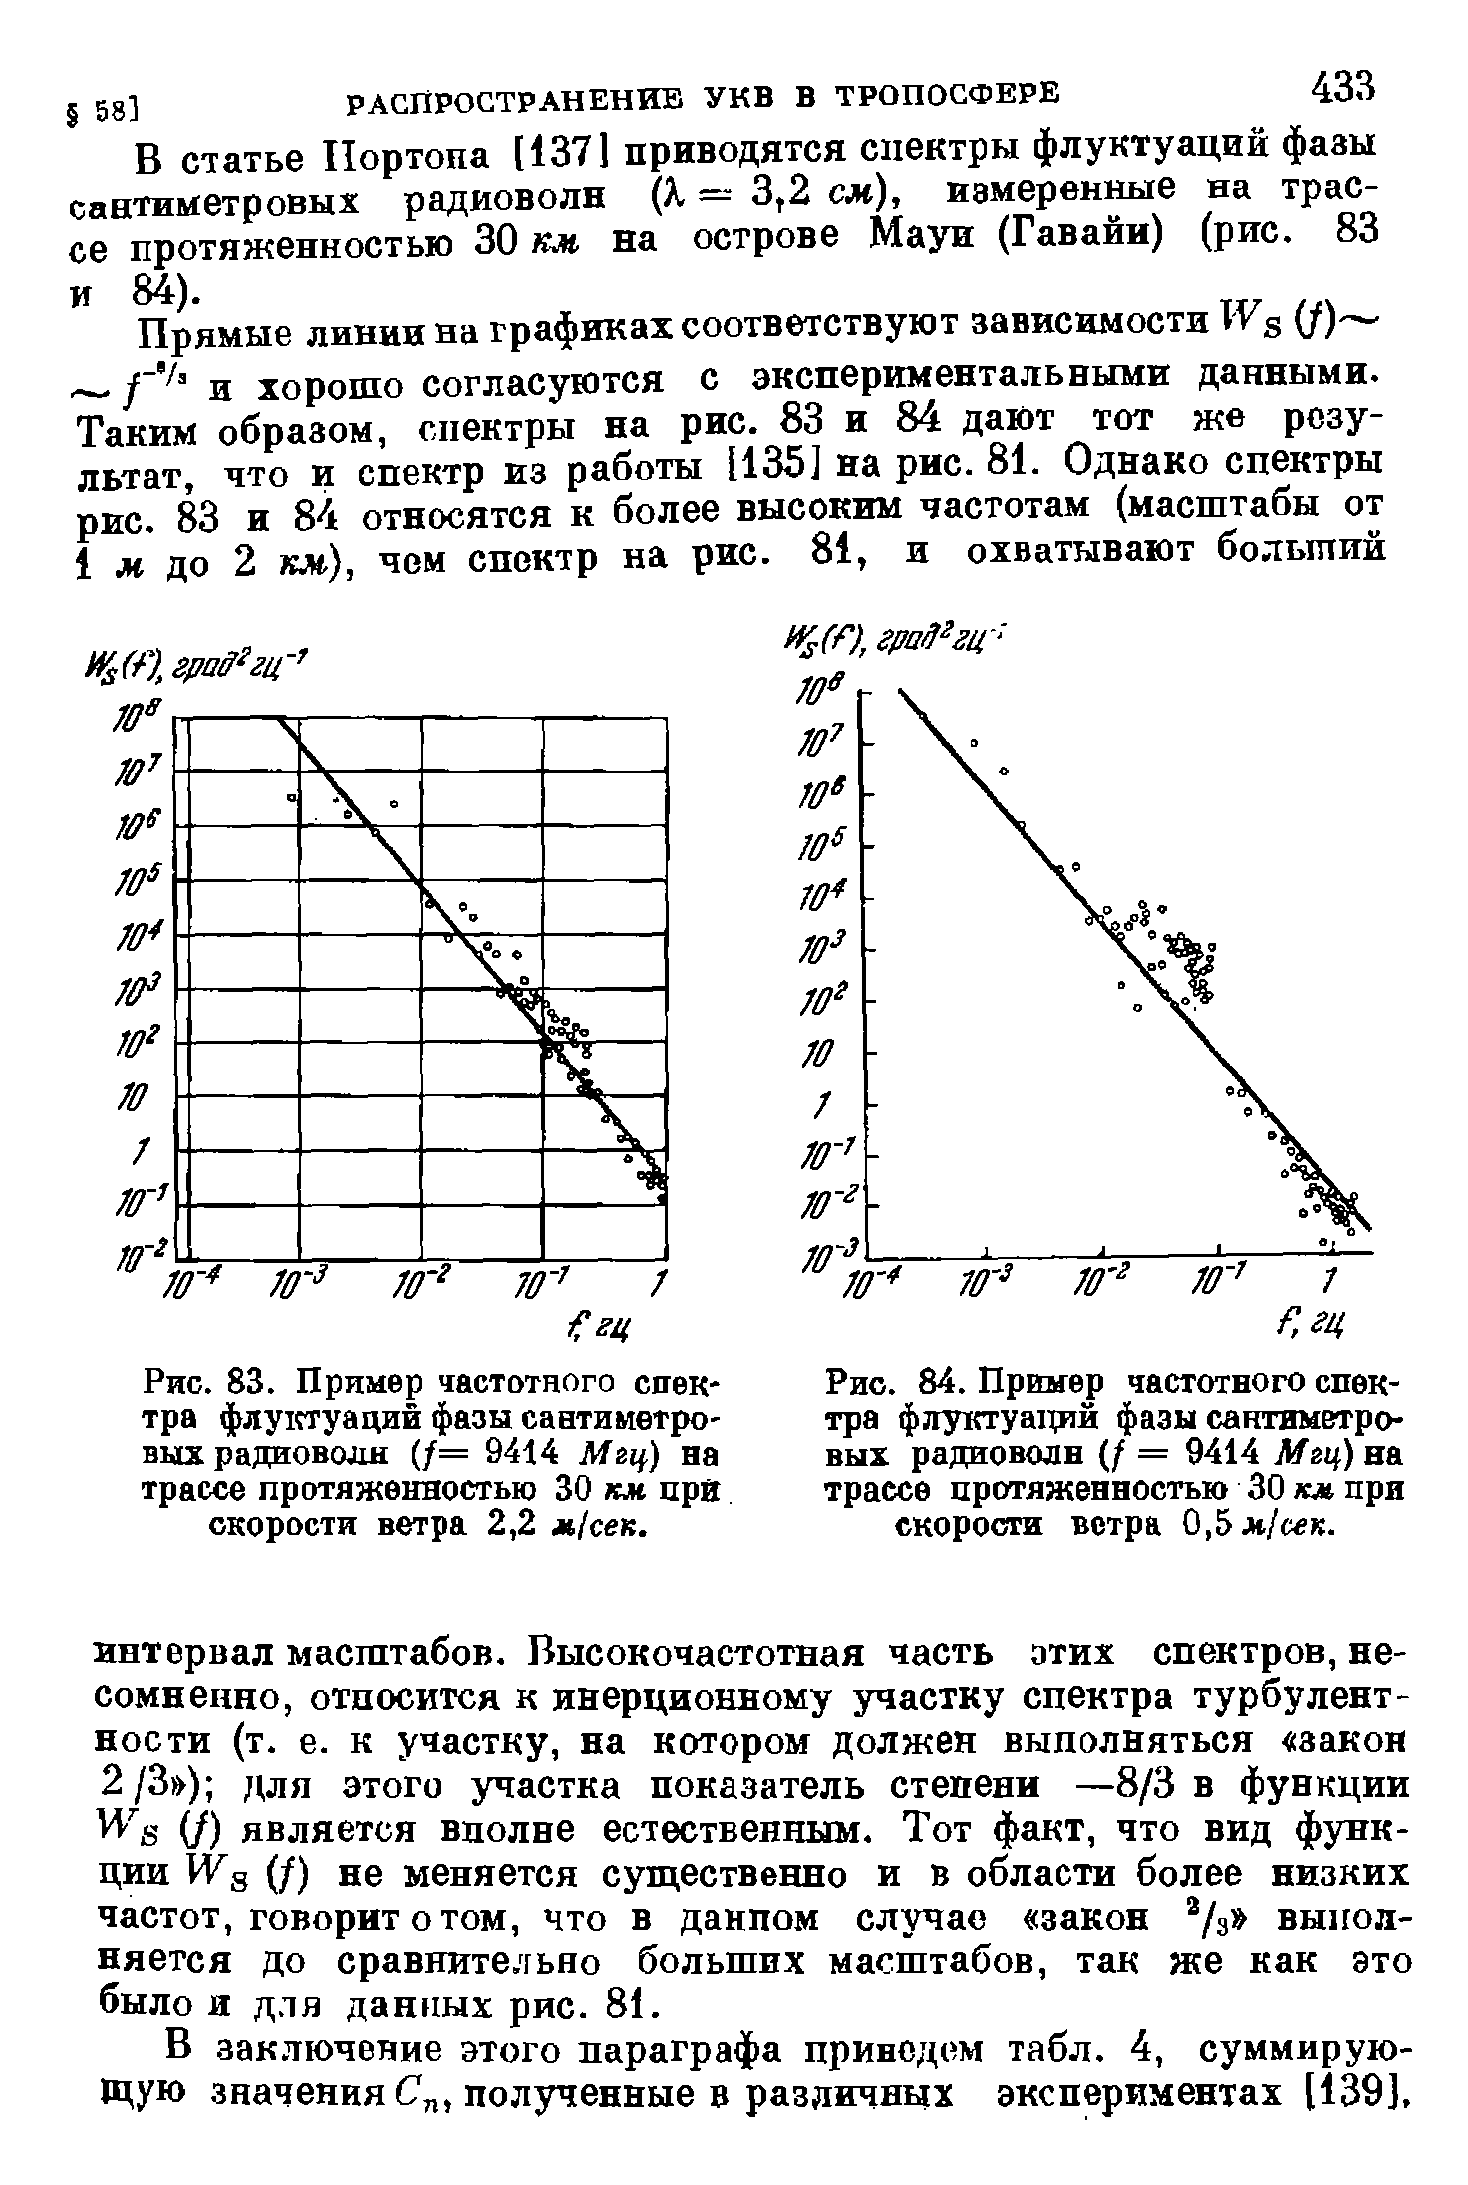 Рис. 83. Пример <a href="/info/19495">частотного спектра</a> флуотуаций фазы сантиметровых радиоволн (/= 9414 Мщ) на трассе протяженностью 30 км цра скорости ветра 2,2 я]сек.
